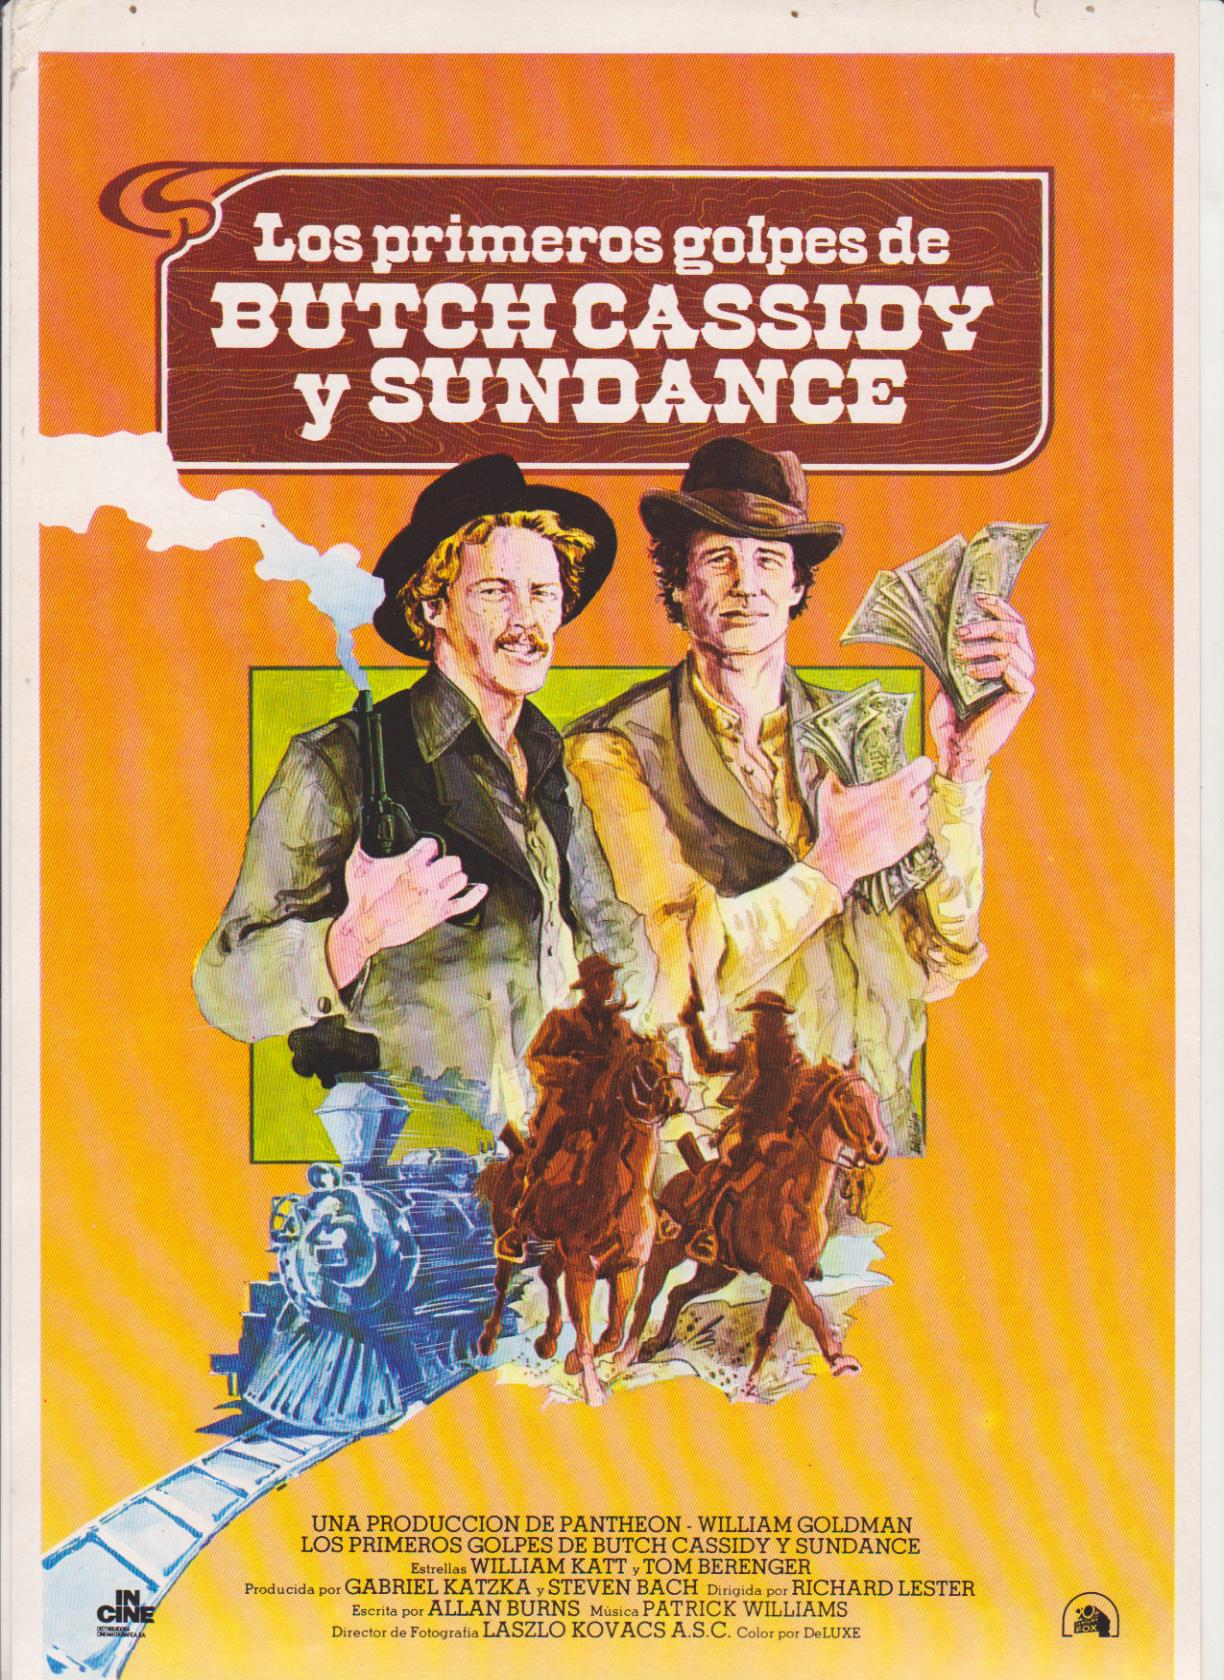 Los primeros golpes de Butch Cassidy y Sundance. Guía sencilla